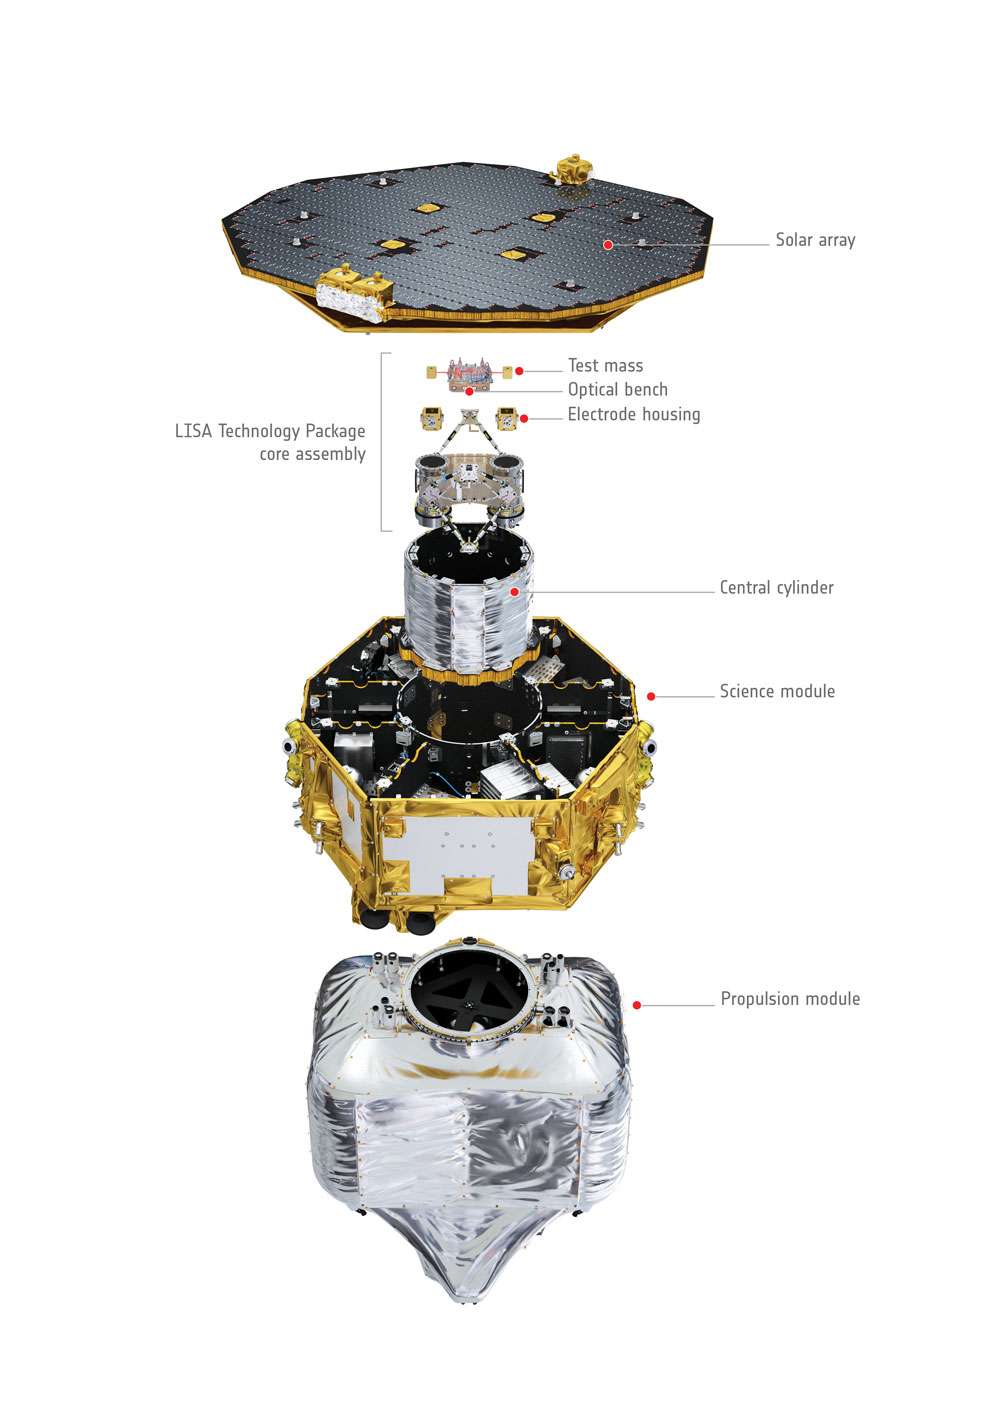  De forme cylindrique et doté d’un panneau solaire hexagonal, le satellite Lisa Pathfinder est large de 2,3 m, haut d’un mètre et pèse environ 500 kg (1,9 tonne avec le module propulsif). © Esa